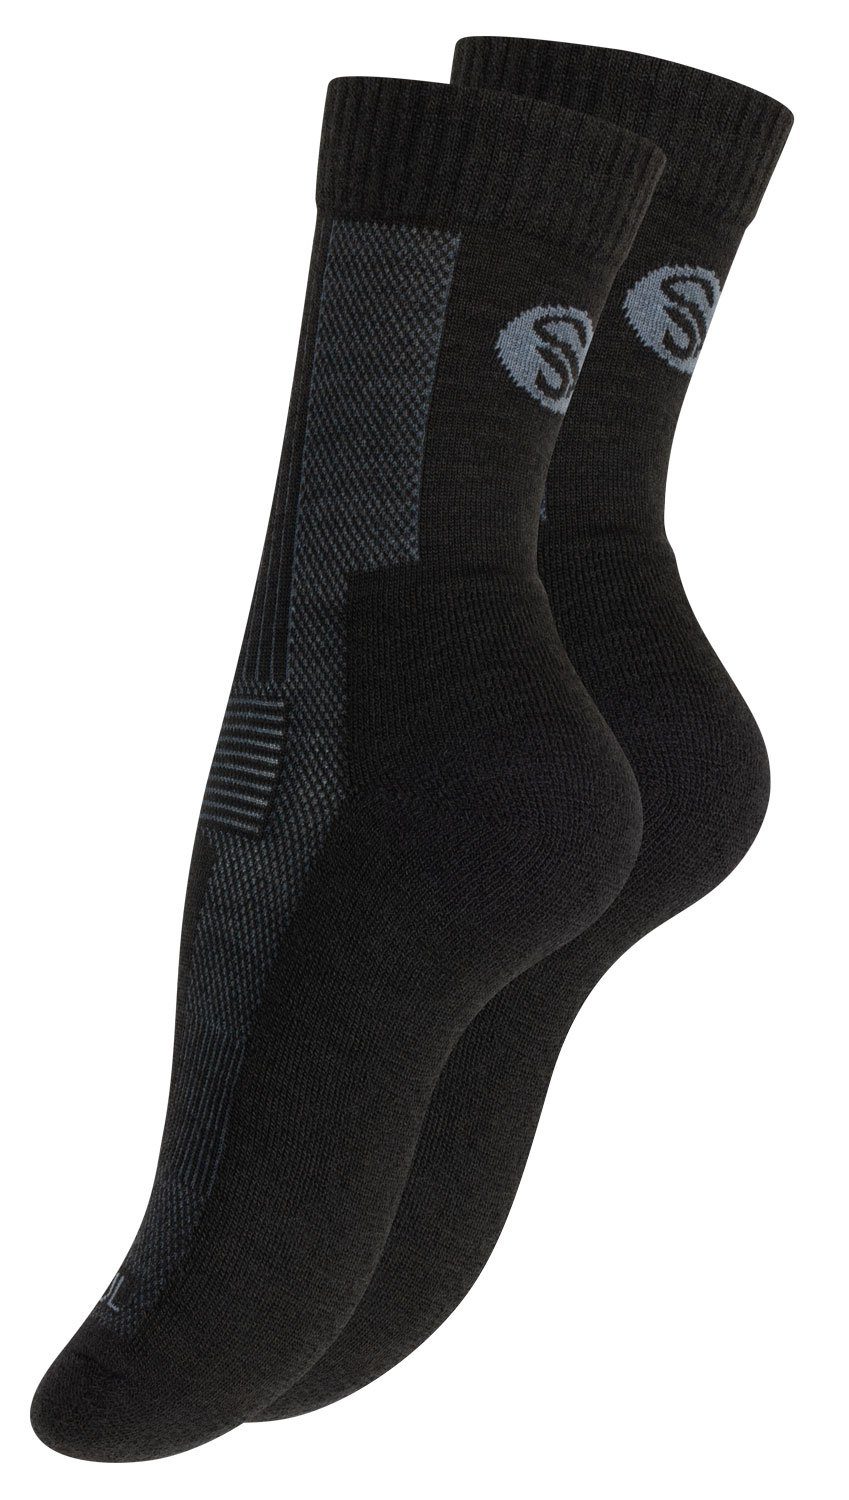 Unisex Schwarz Funktionssocken Outdoor Soul® oder 3 Merino (1-Paar) Stark Trekking Socken, 1 Paar